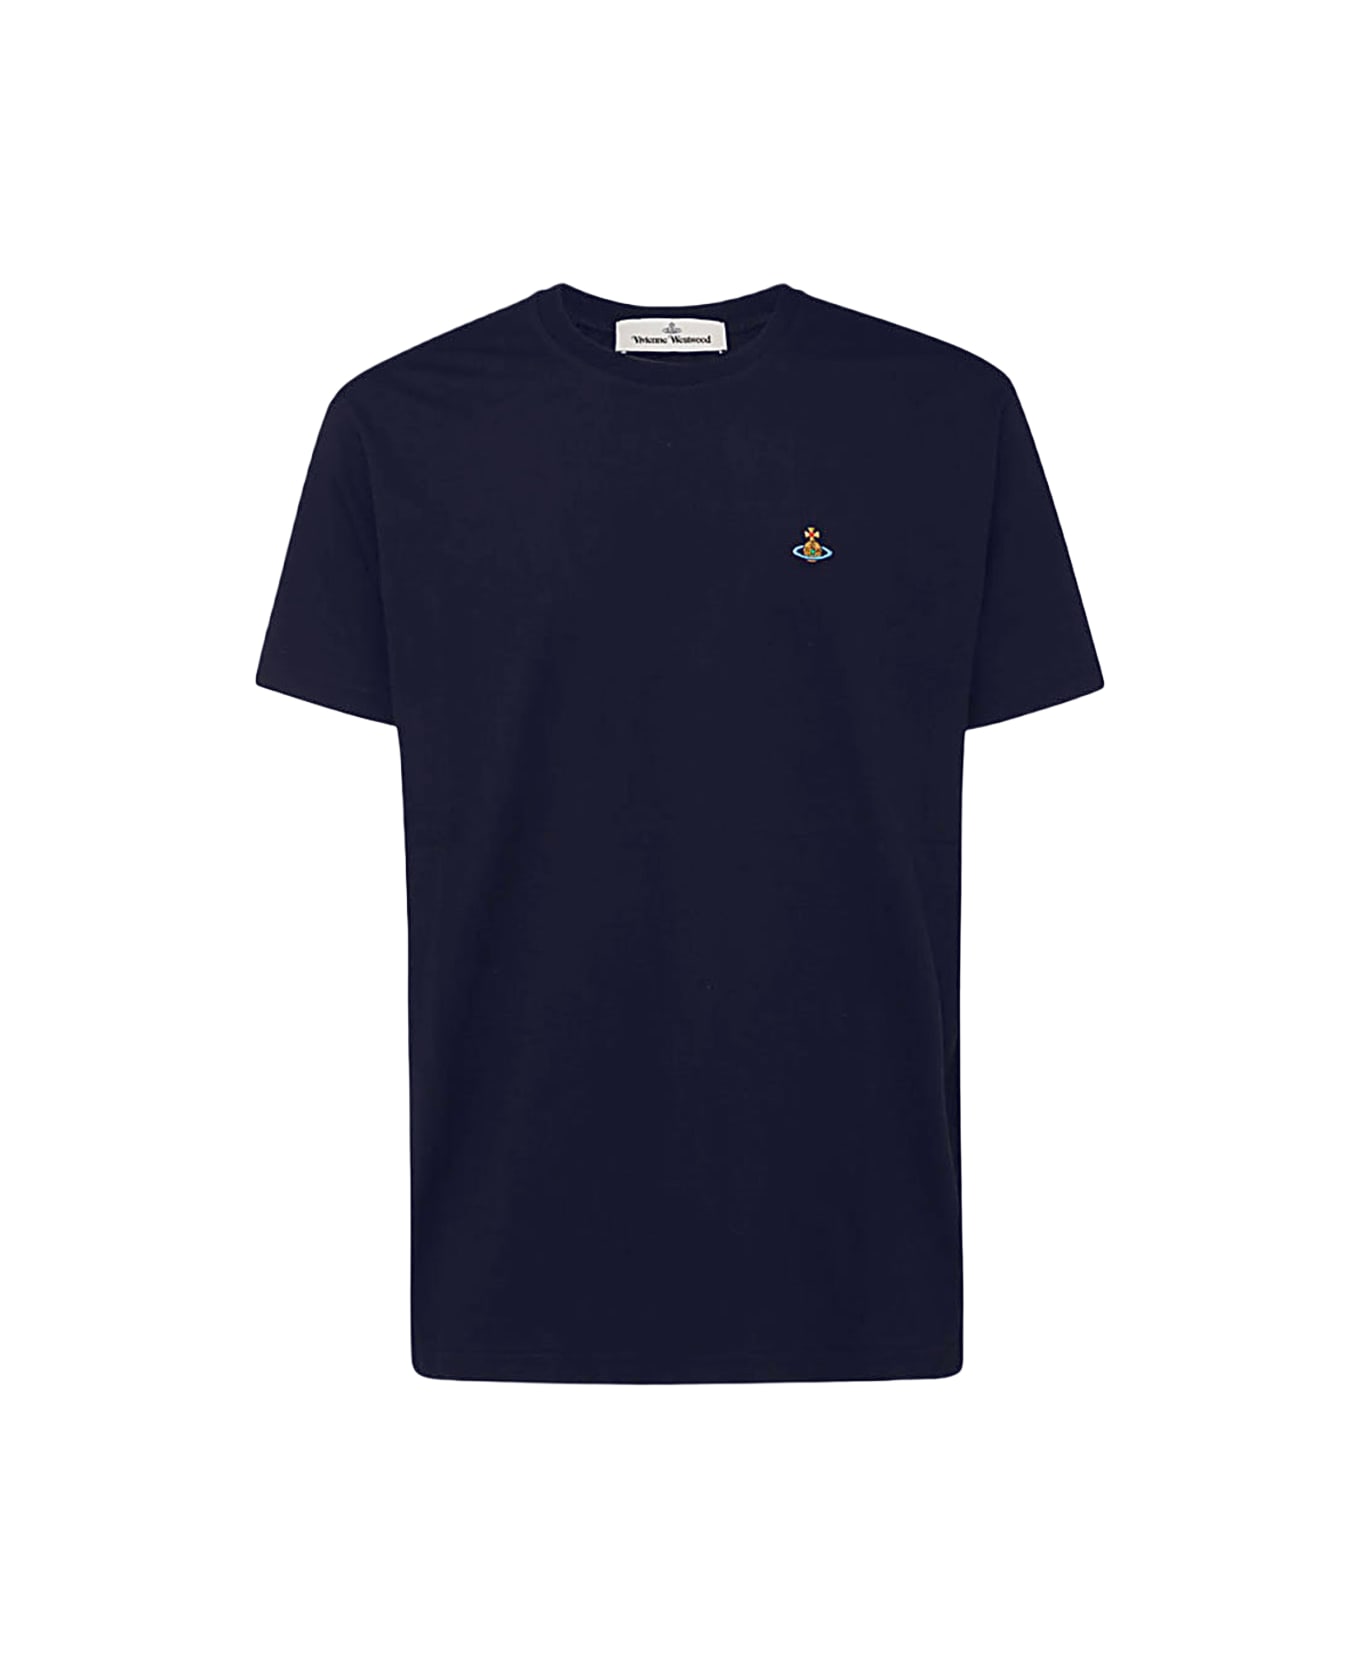 Vivienne Westwood Navy Blue Cotton T-shirt - Blue